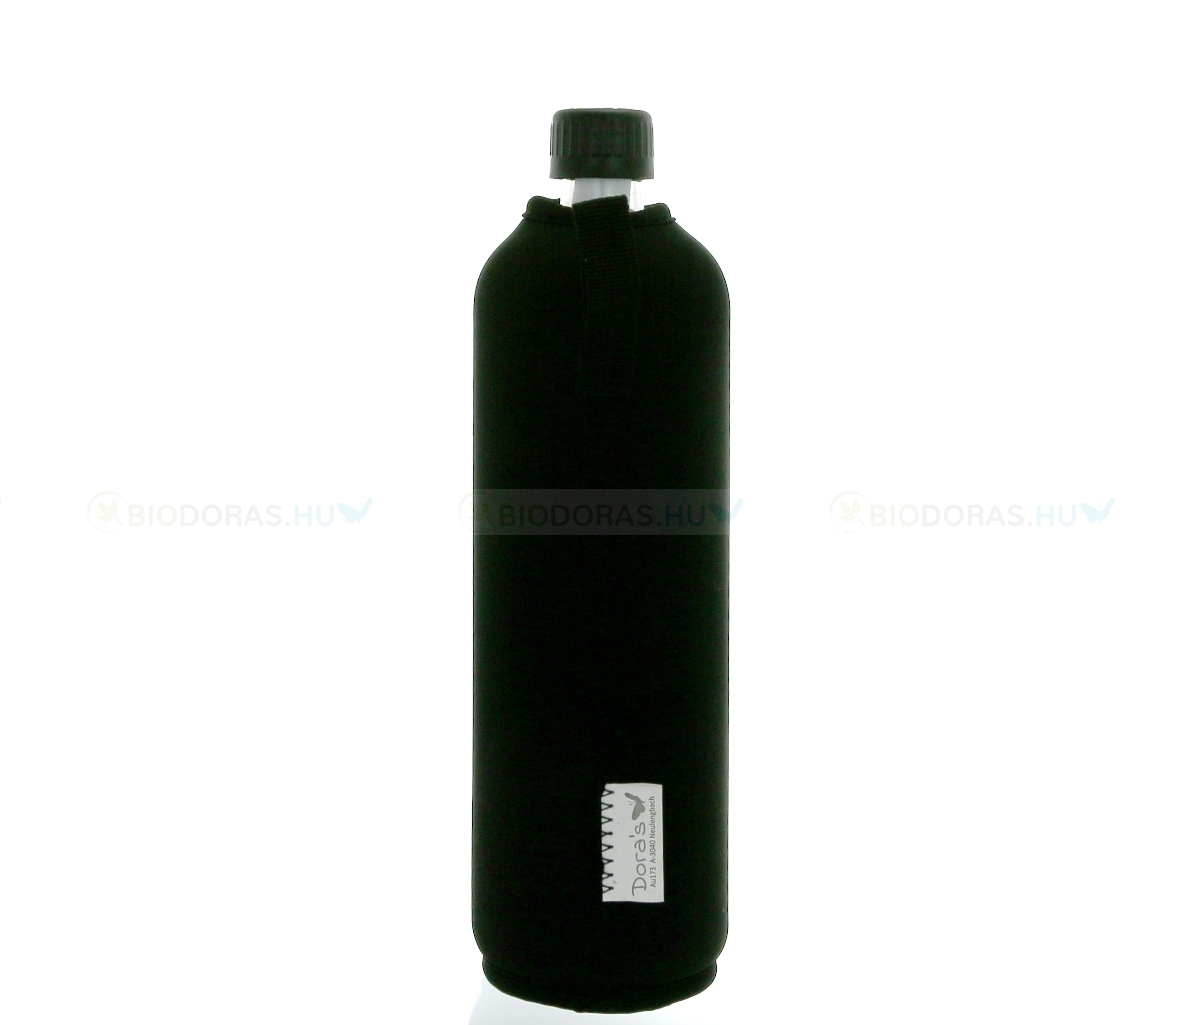 DORAS Üvegkulacs (üvegpalack) fekete színű neoprén huzattal - 700 ml